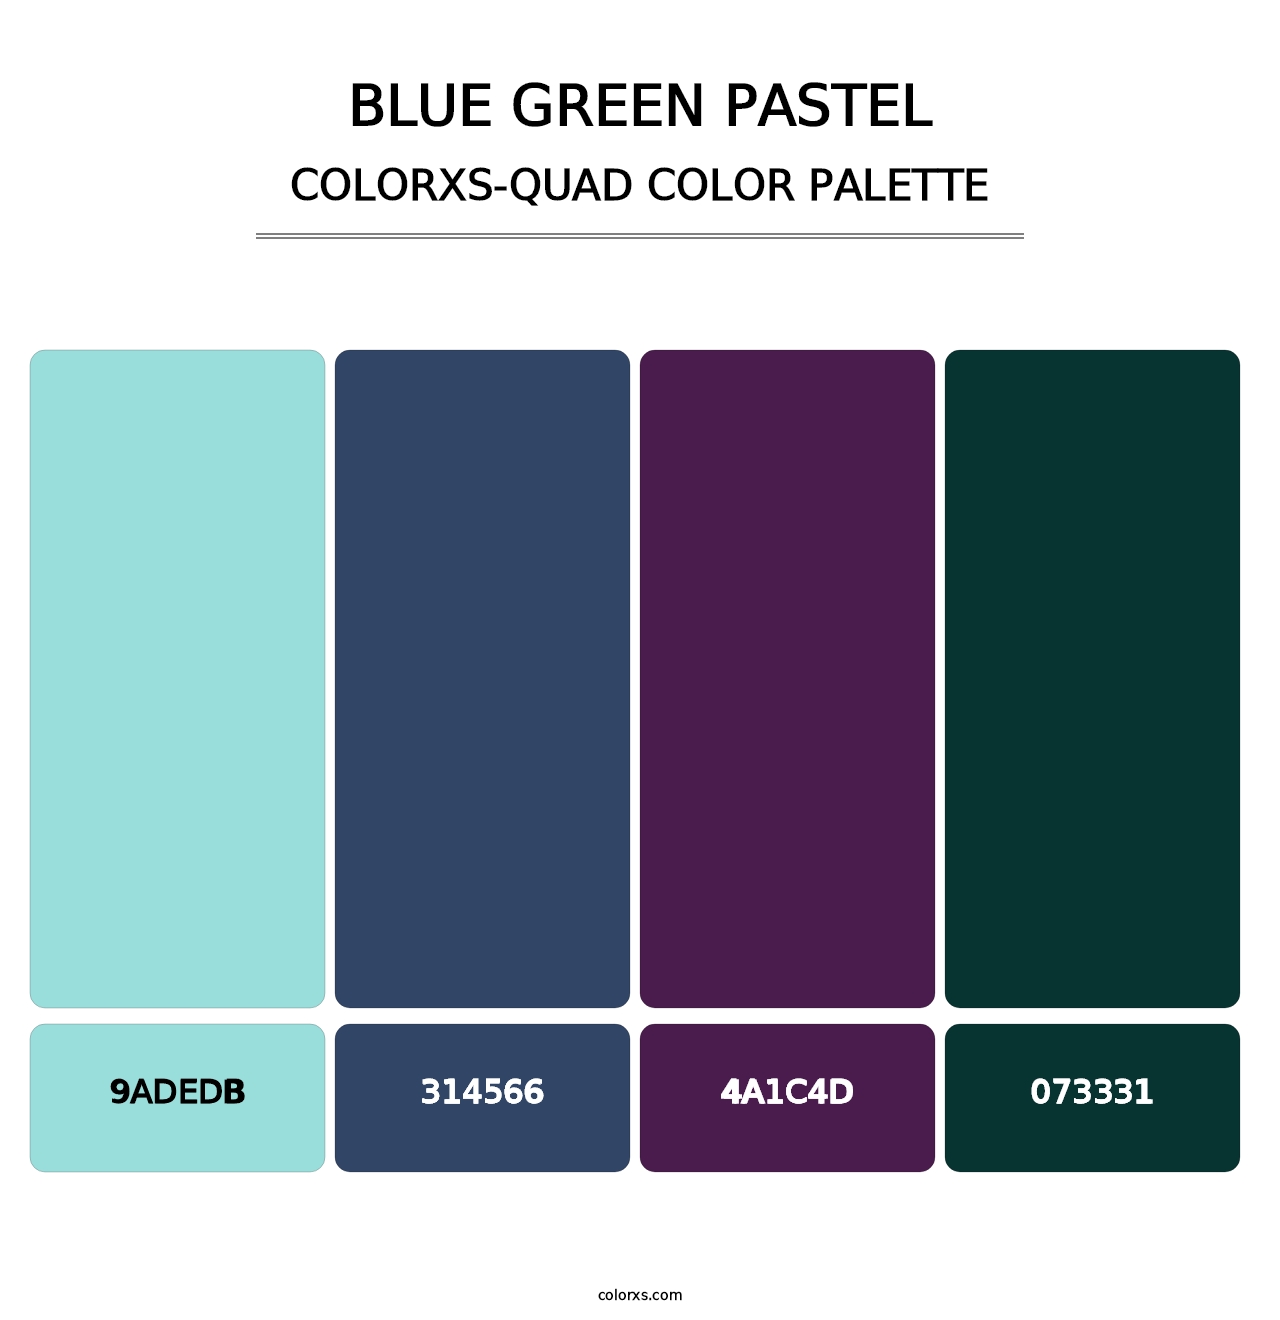 Blue Green Pastel - Colorxs Quad Palette